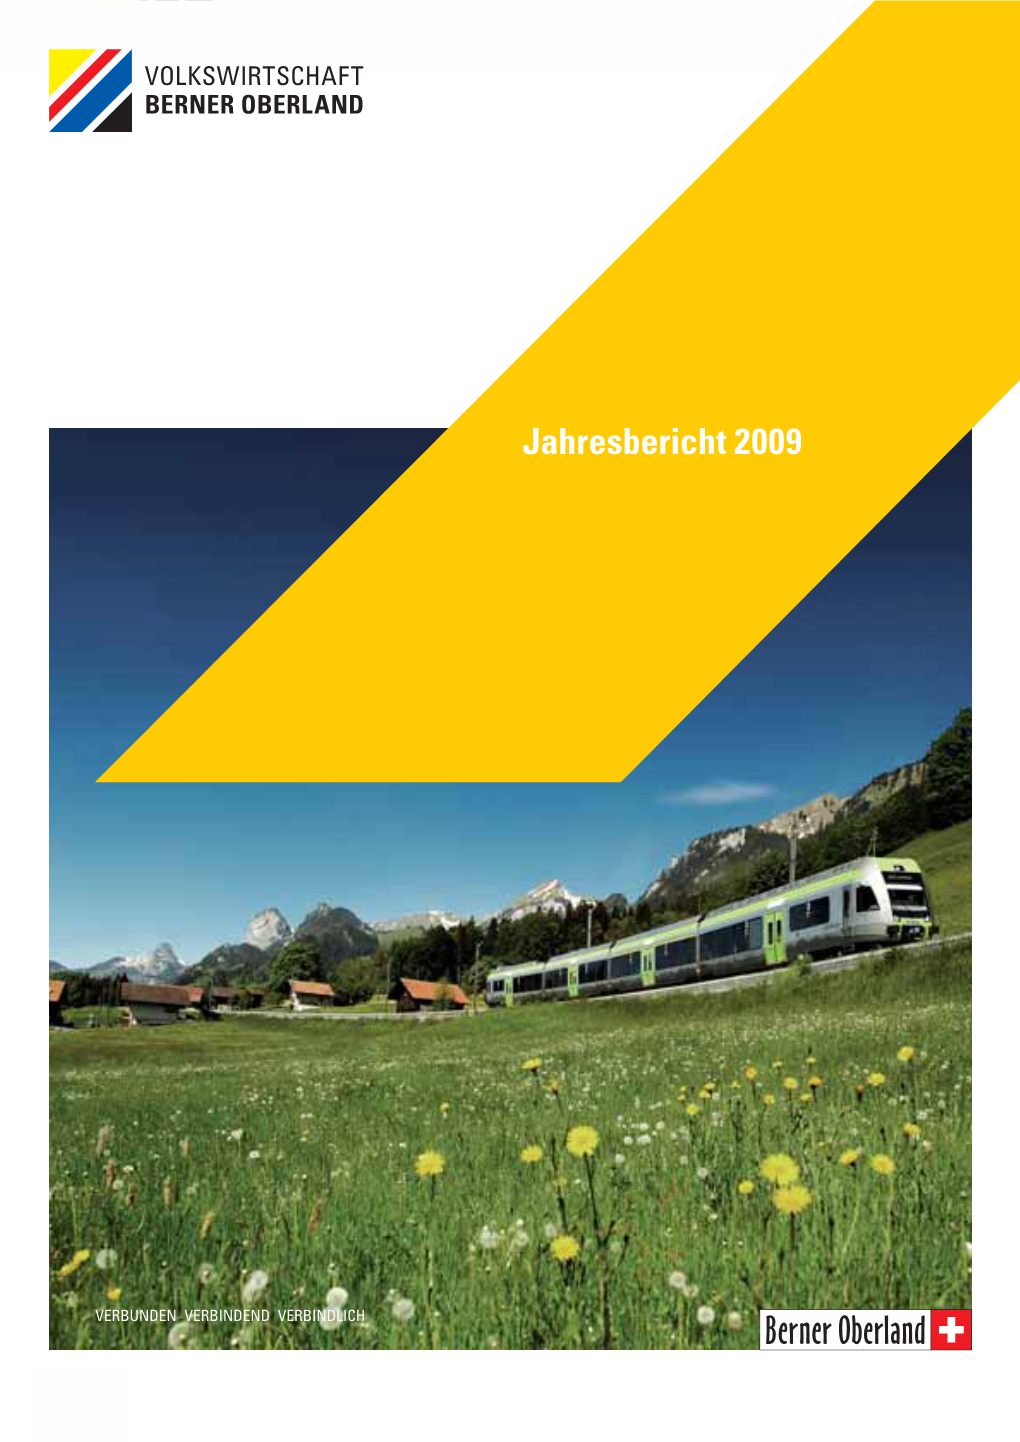 Jahresbericht 2009 Volkswirtschaft Berner Oberland